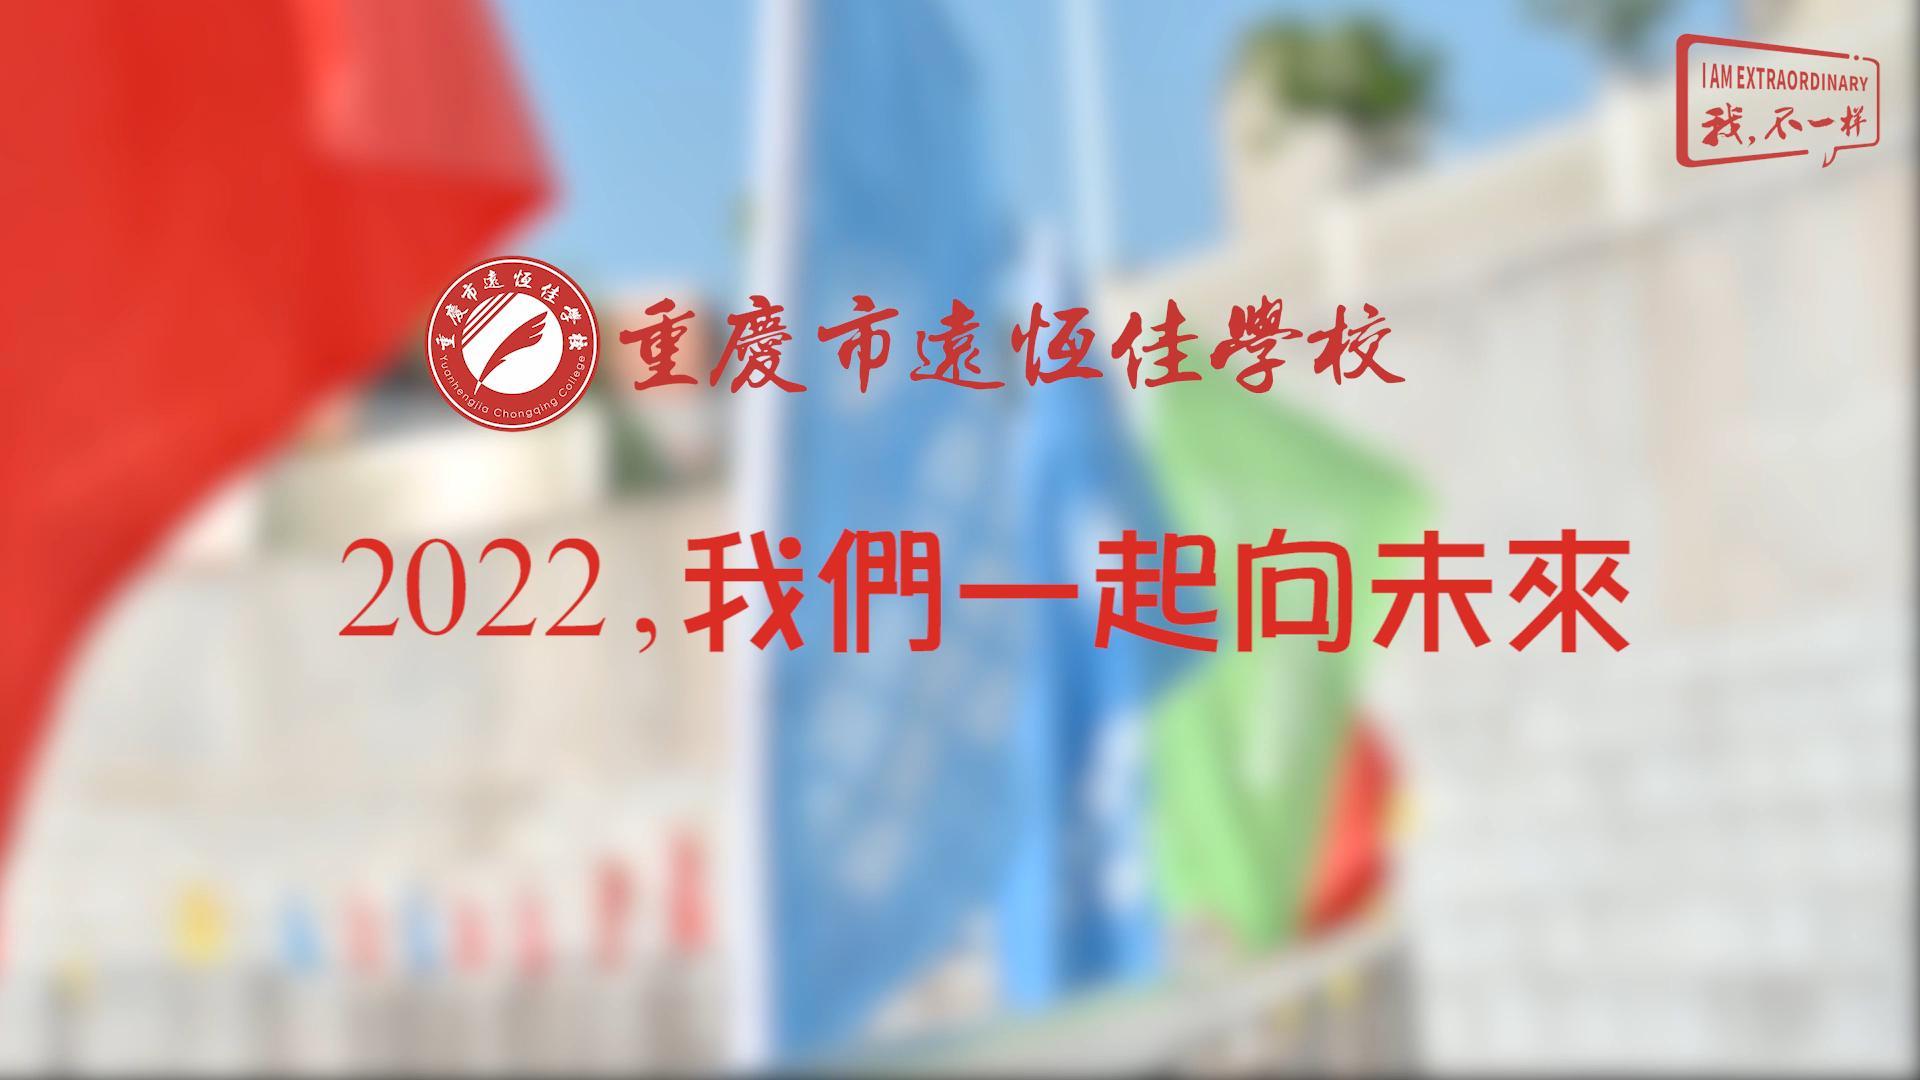 2022，我们一起向未来！——重庆市远恒佳学校2022年第四届运动会精彩回顾